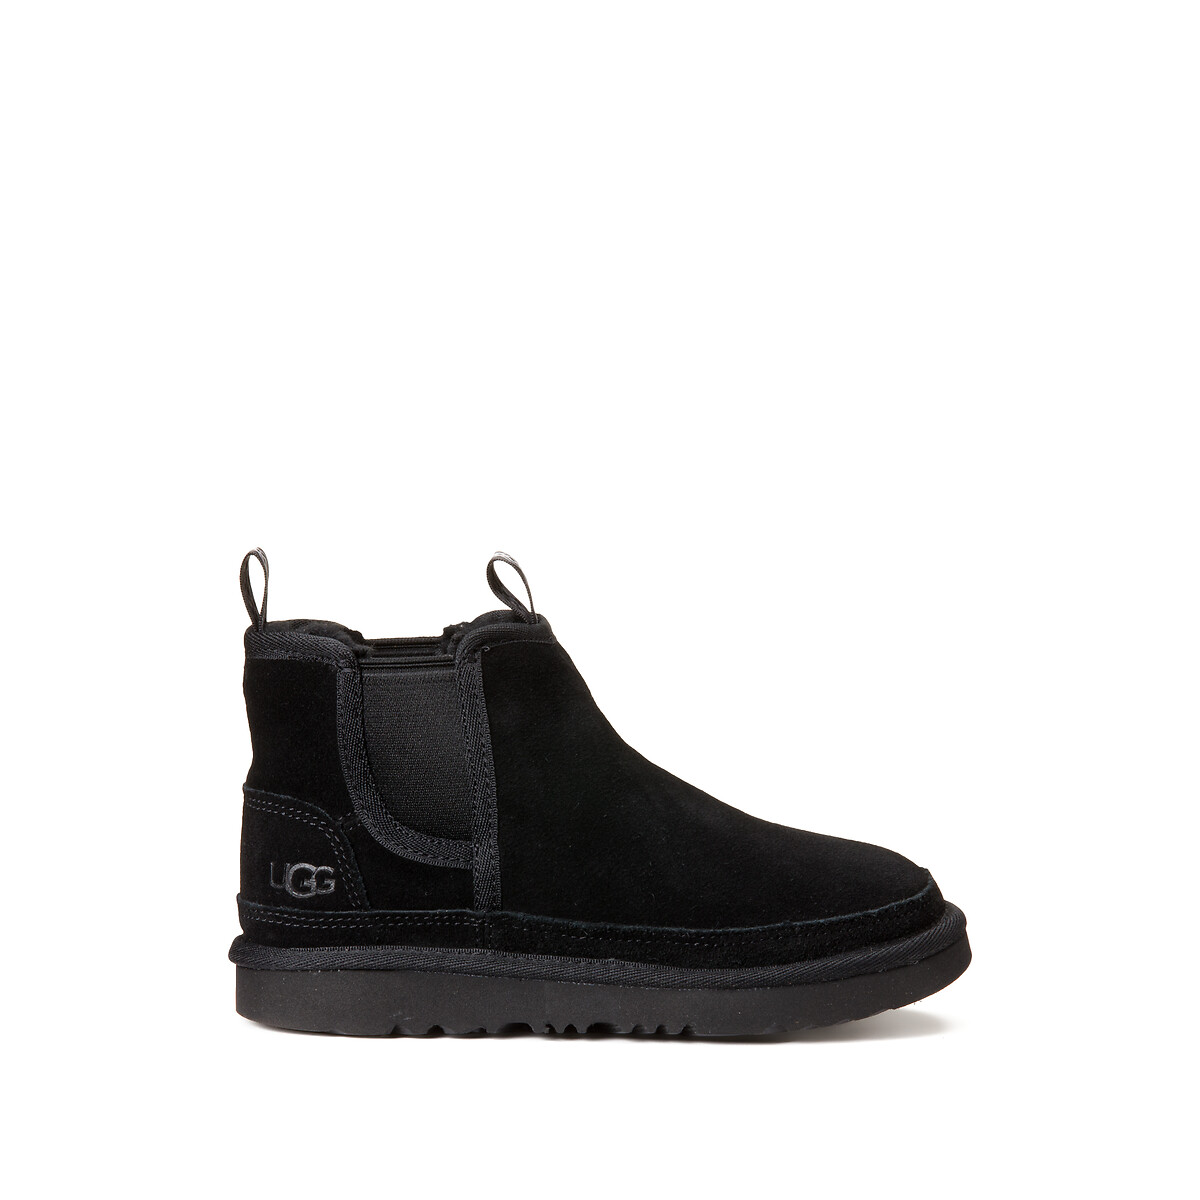 Kids k neumel chelsea boots in suede, black, Ugg | La Redoute